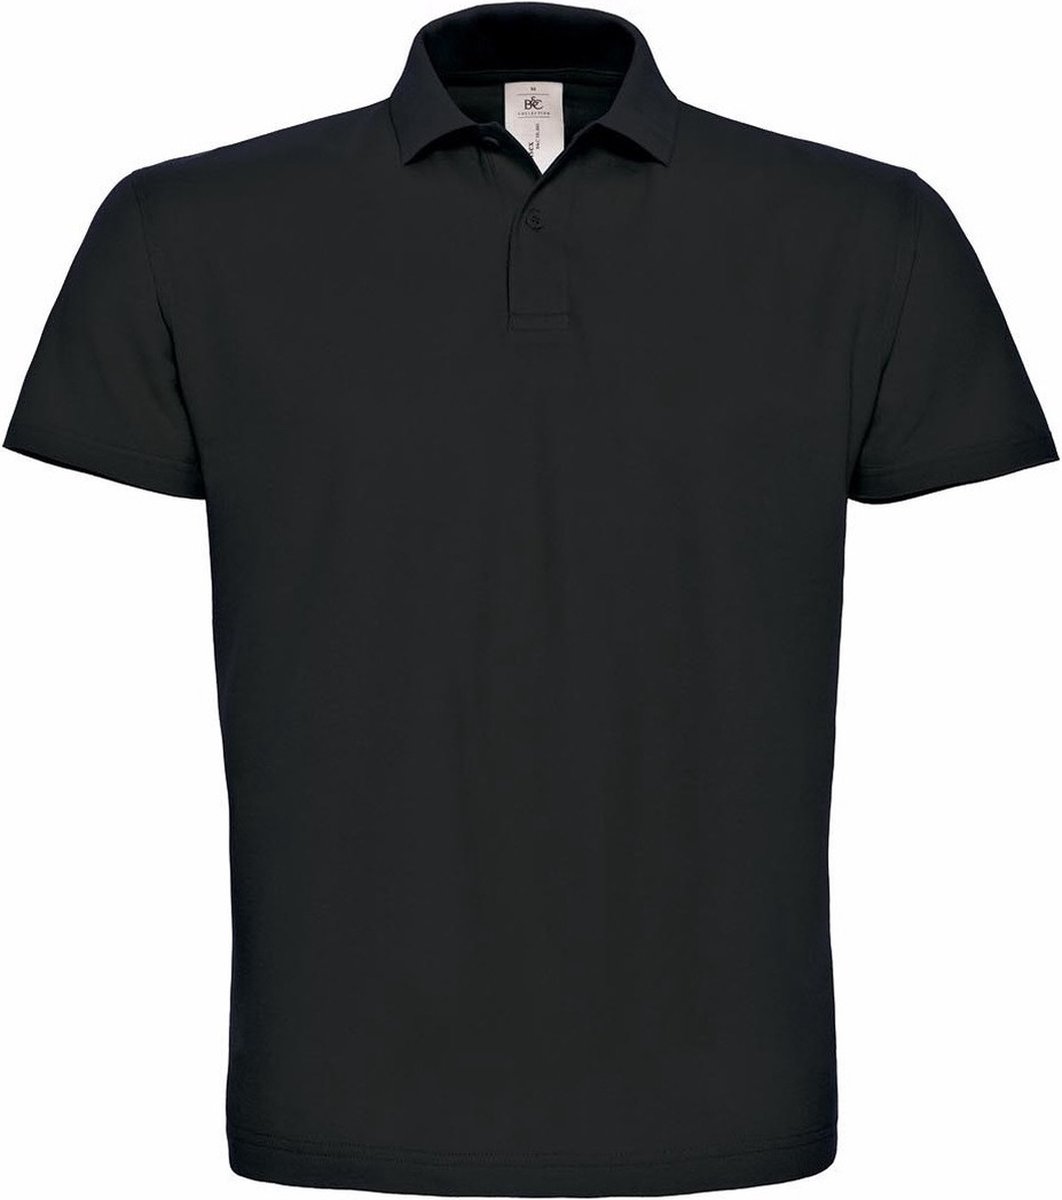 Zwart poloshirt basic van katoen voor heren - katoen - 180 grams - polo t-shirts S (48)